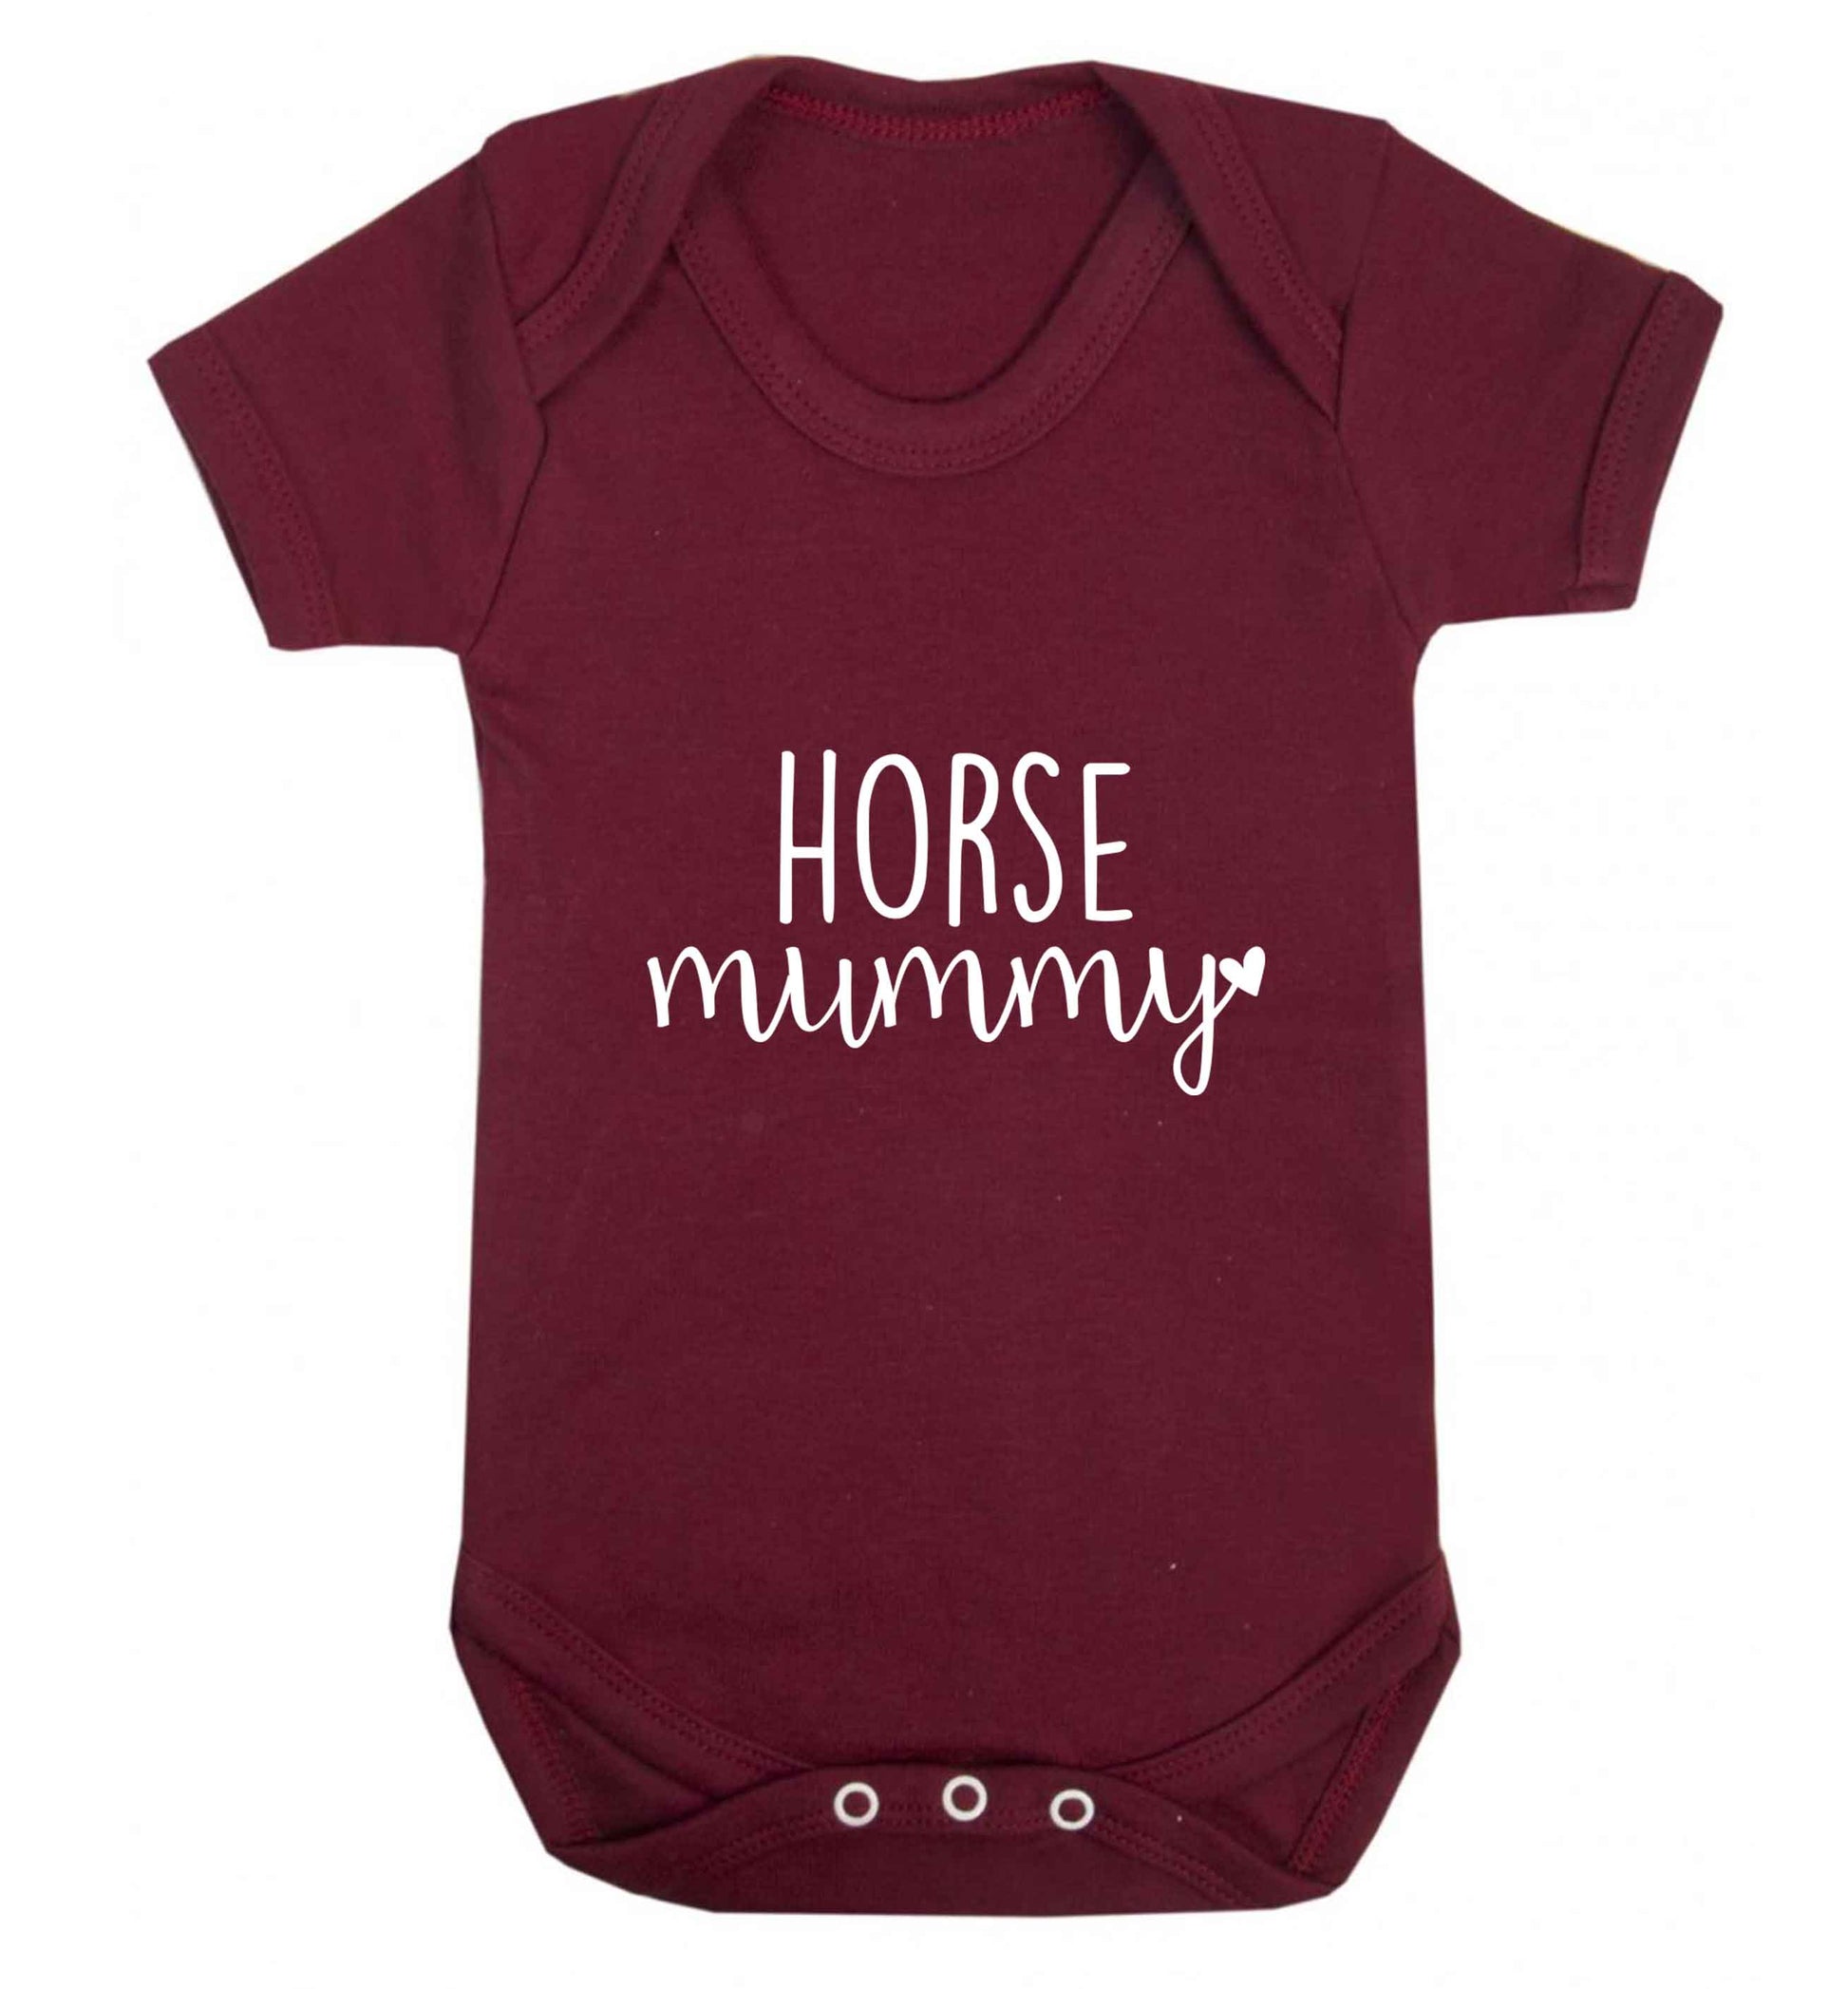 Horse mummy baby vest maroon 18-24 months